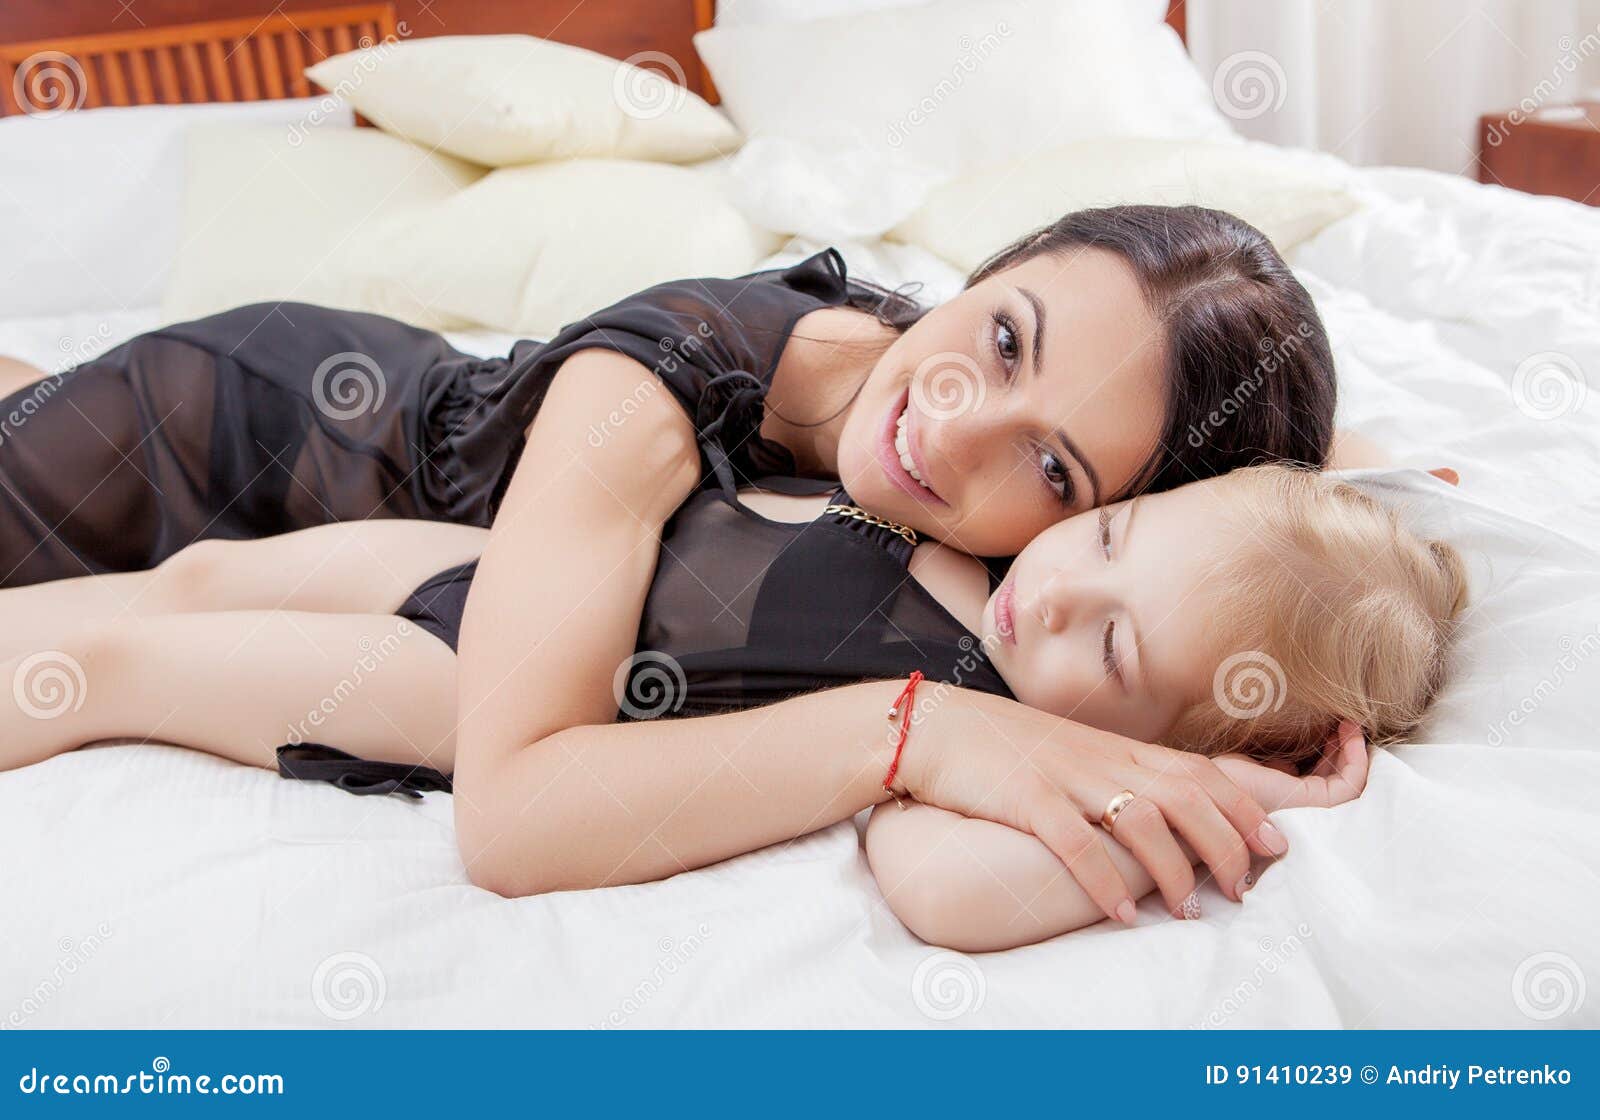 Сестра пришла. Японские Дочки в постели.. Мама обнимает дочь в кровати. Две маленькие дочери в постели. Мама с ребёнком в постели голая.